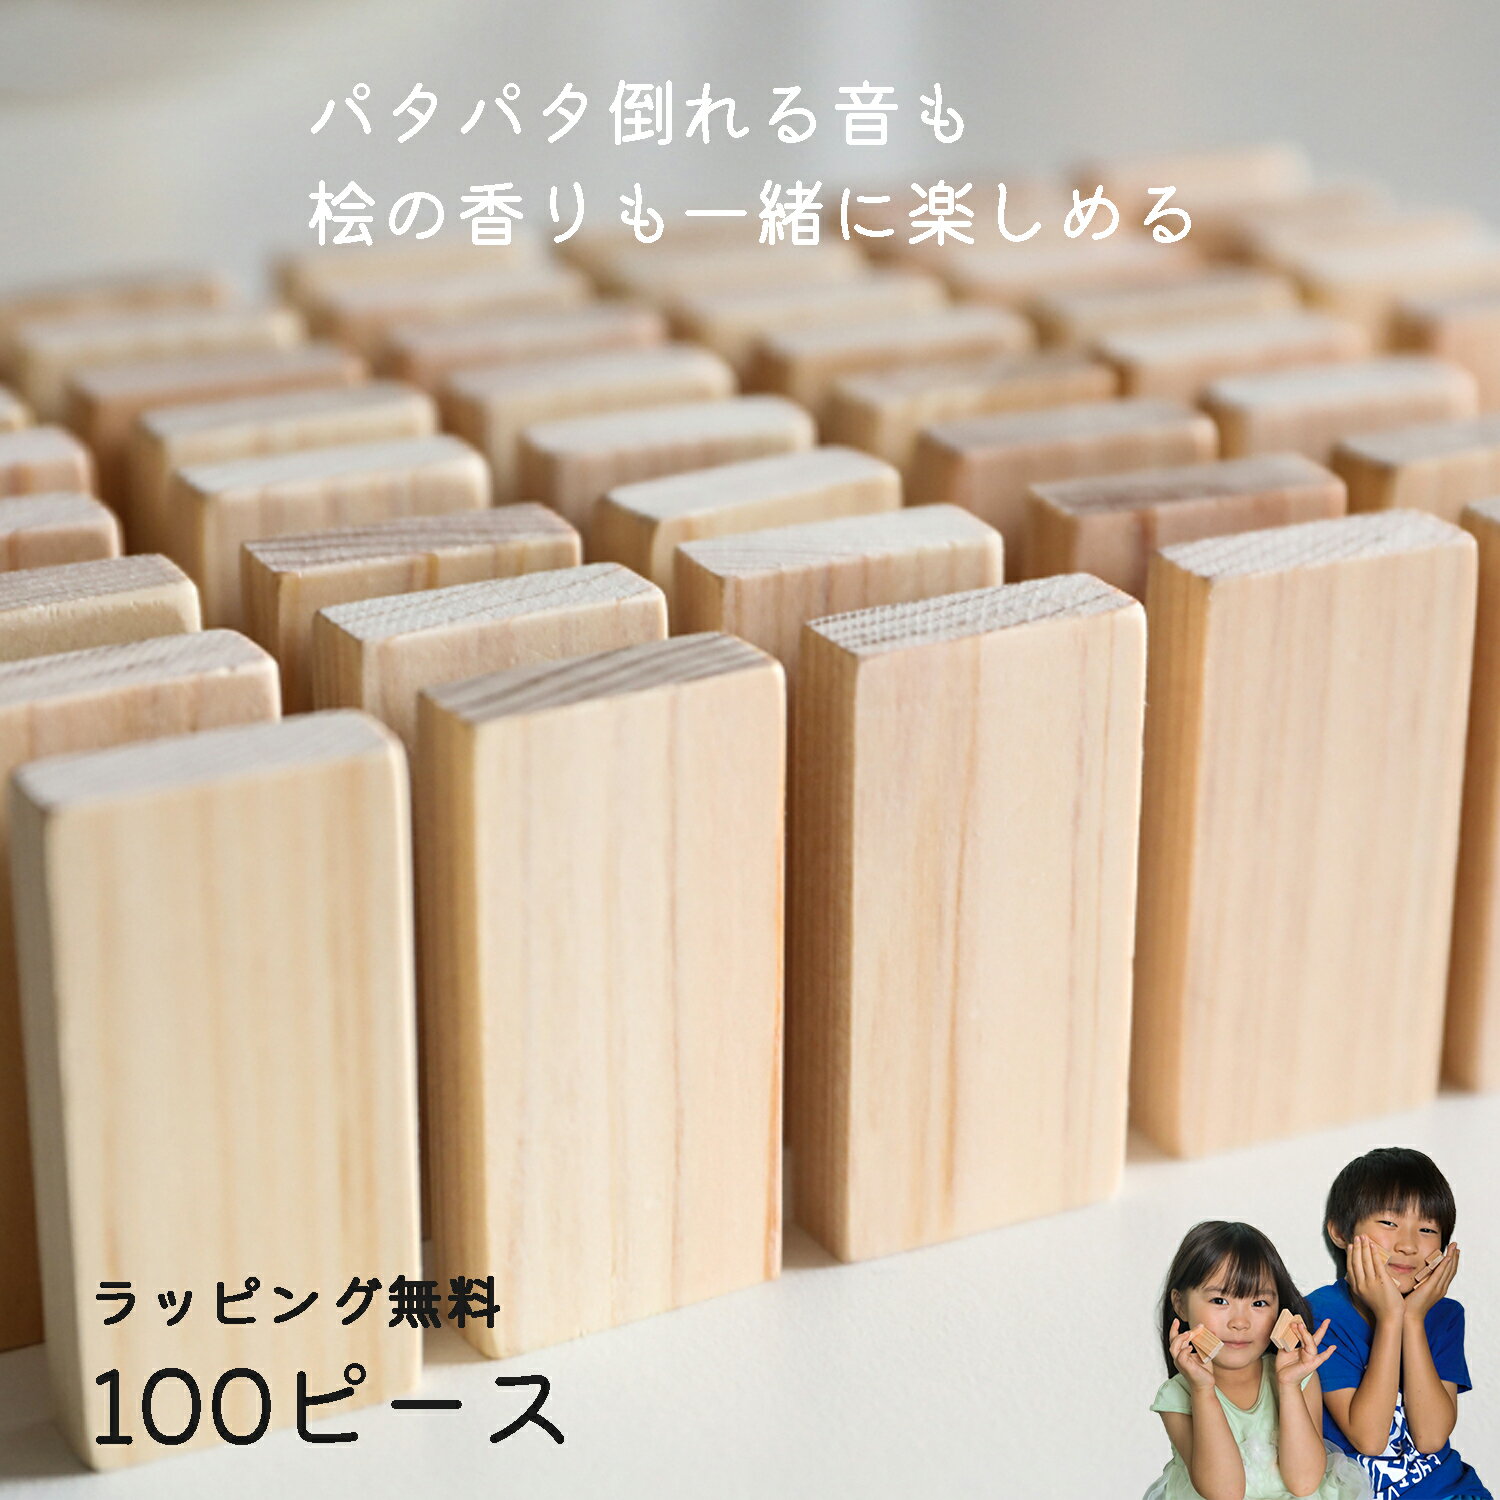 ドミノ倒し 100ピース 日本製 ひのき おもちゃ ドミノ 木のおもちゃ 積み木 知育玩具 木製 お誕生日 出産祝い 女の子 男の子 プレゼント